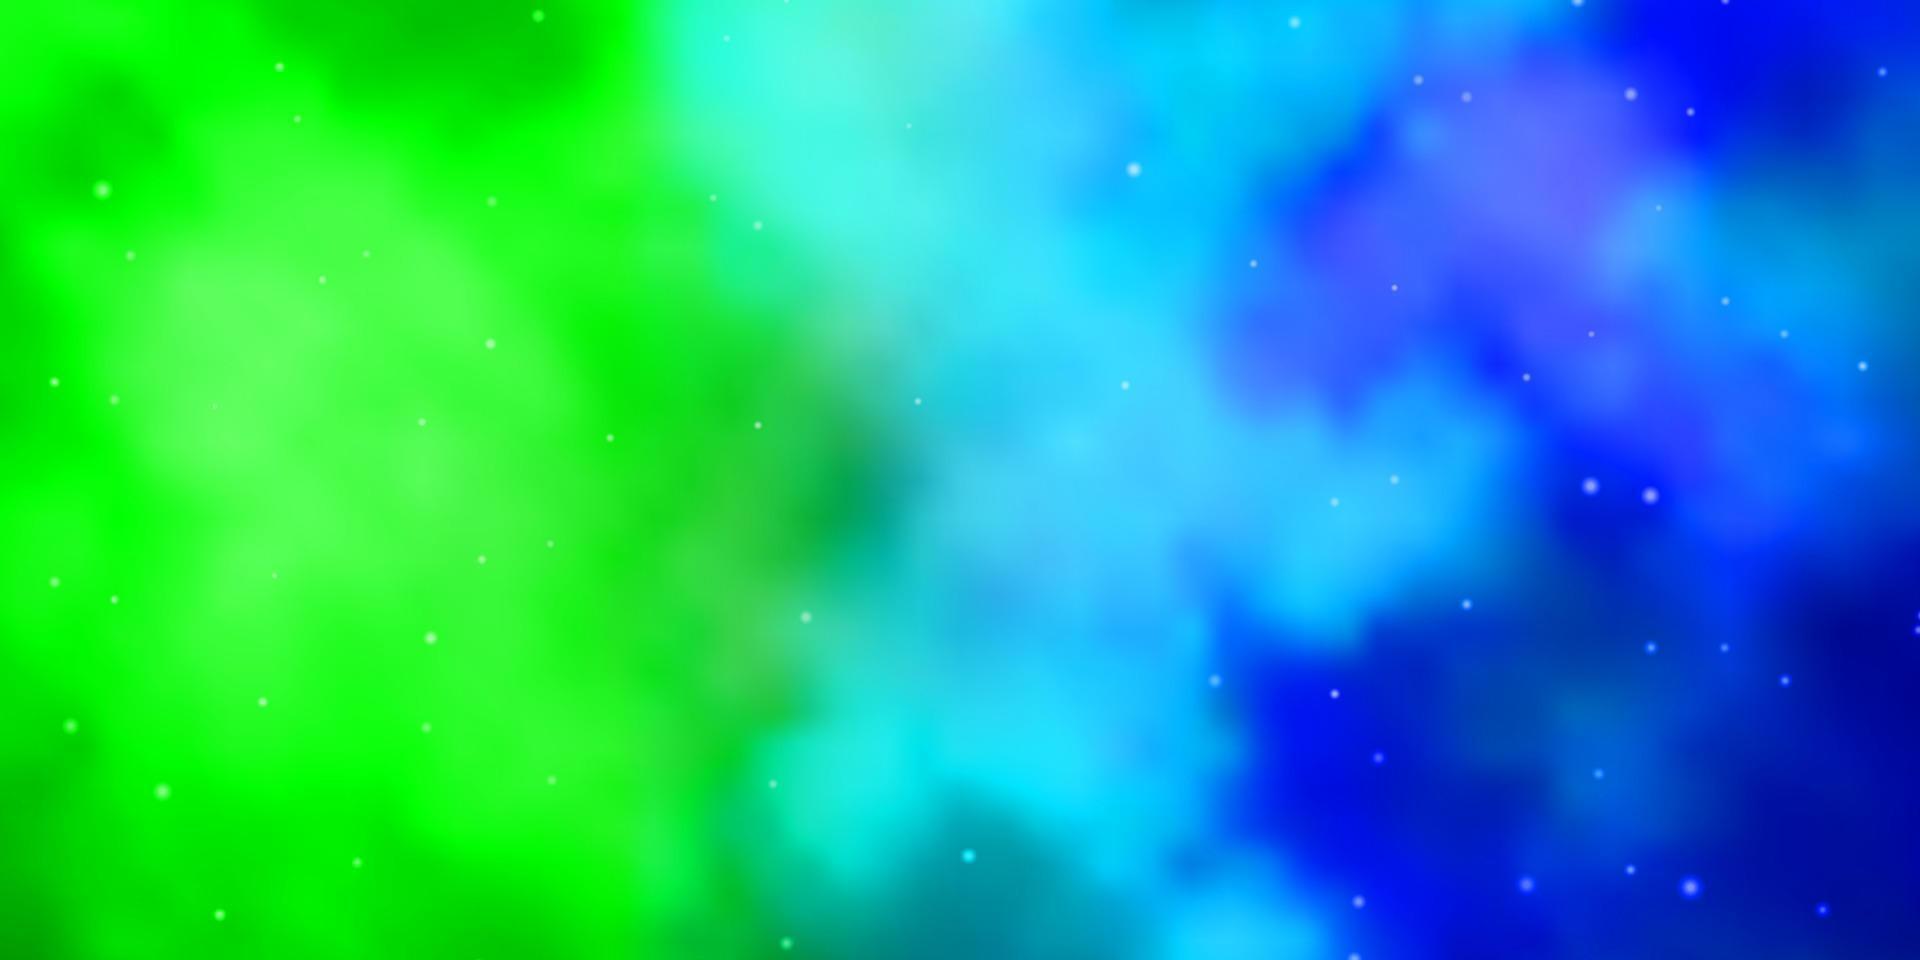 struttura di vettore blu chiaro, verde con bellissime stelle.